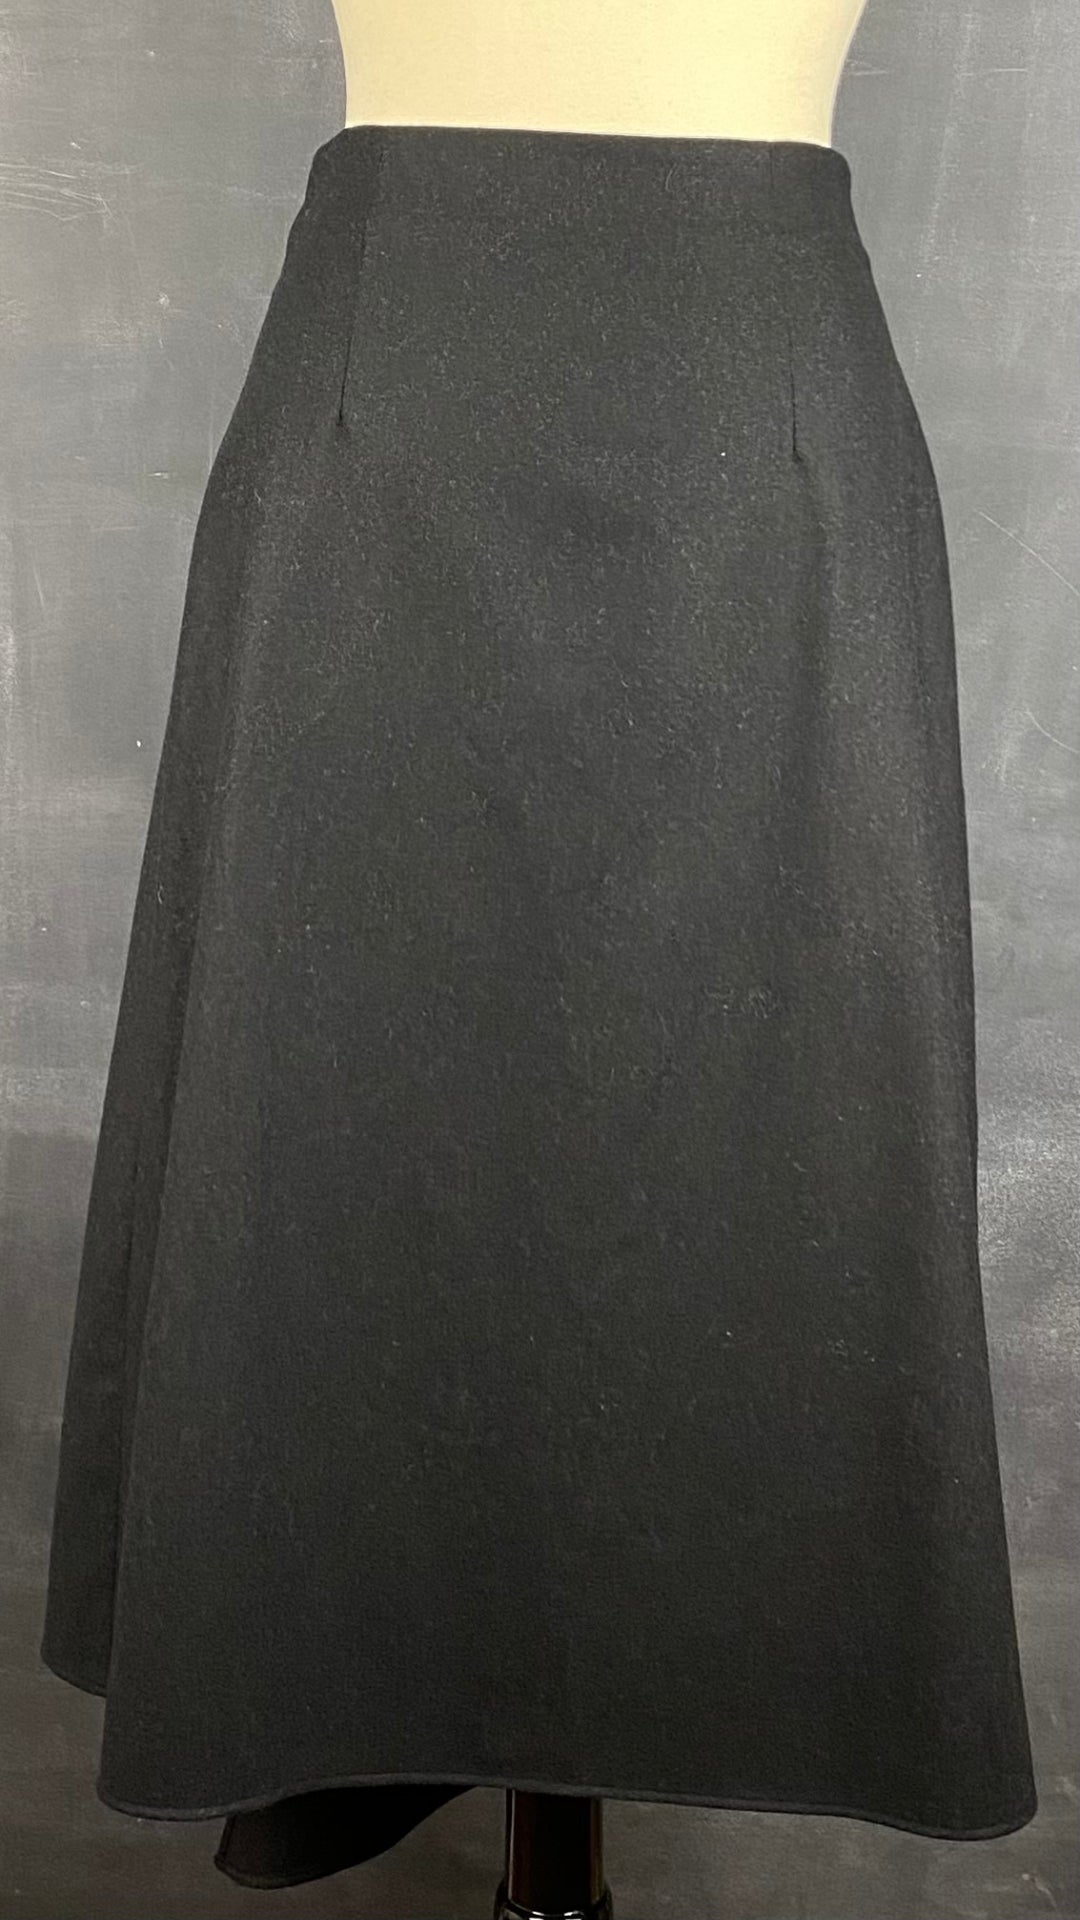 Jupe longue noire chiné en lainage Massimo Dutti, taille small. Vue de dos.